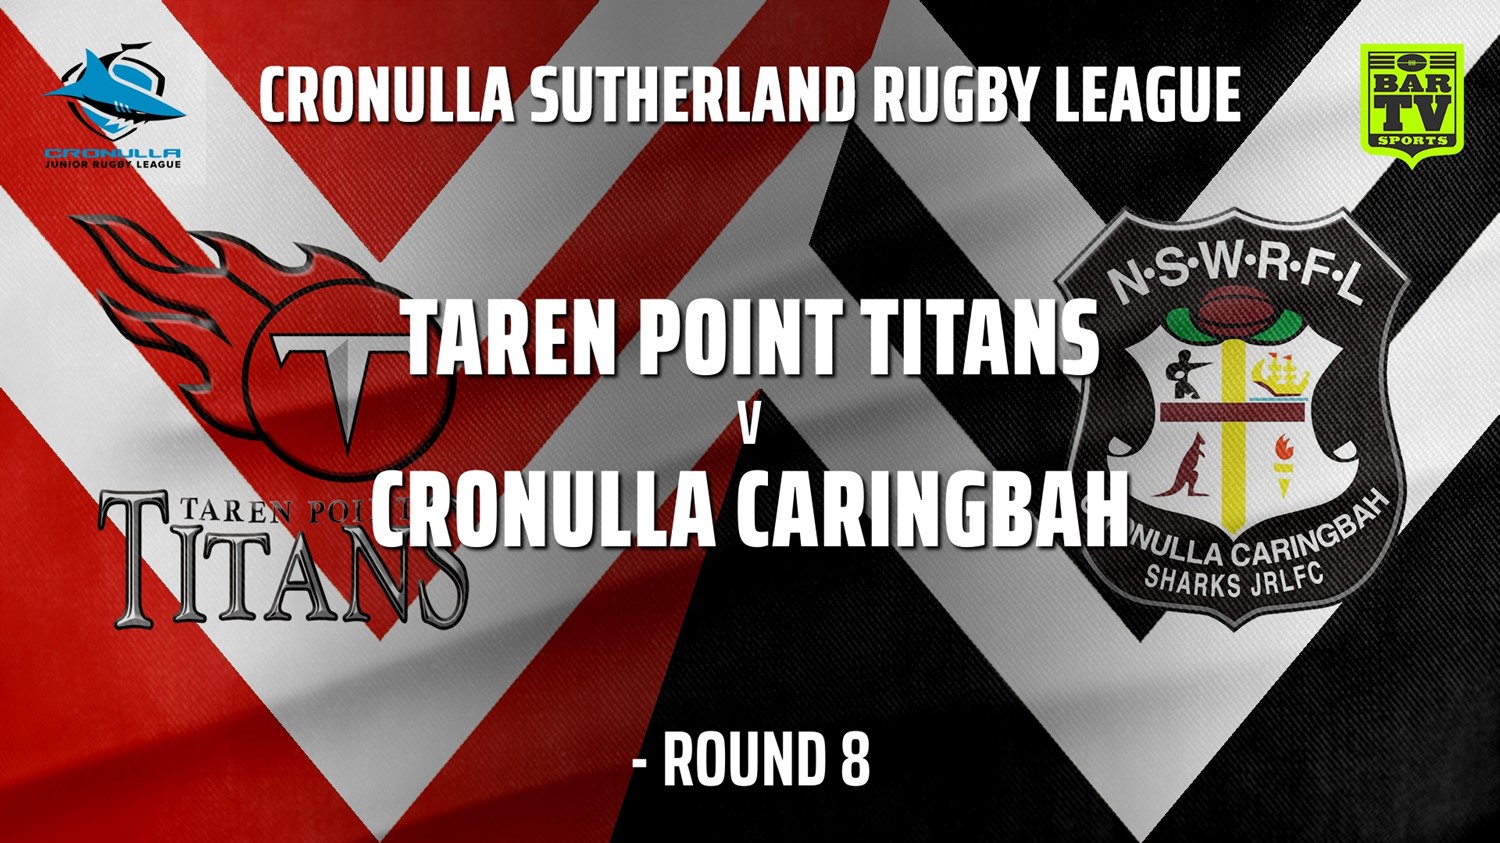 210626-Cronulla Juniors - Under 9 Bronze Round 8 - Taren Point Titans v Cronulla Caringbah Slate Image